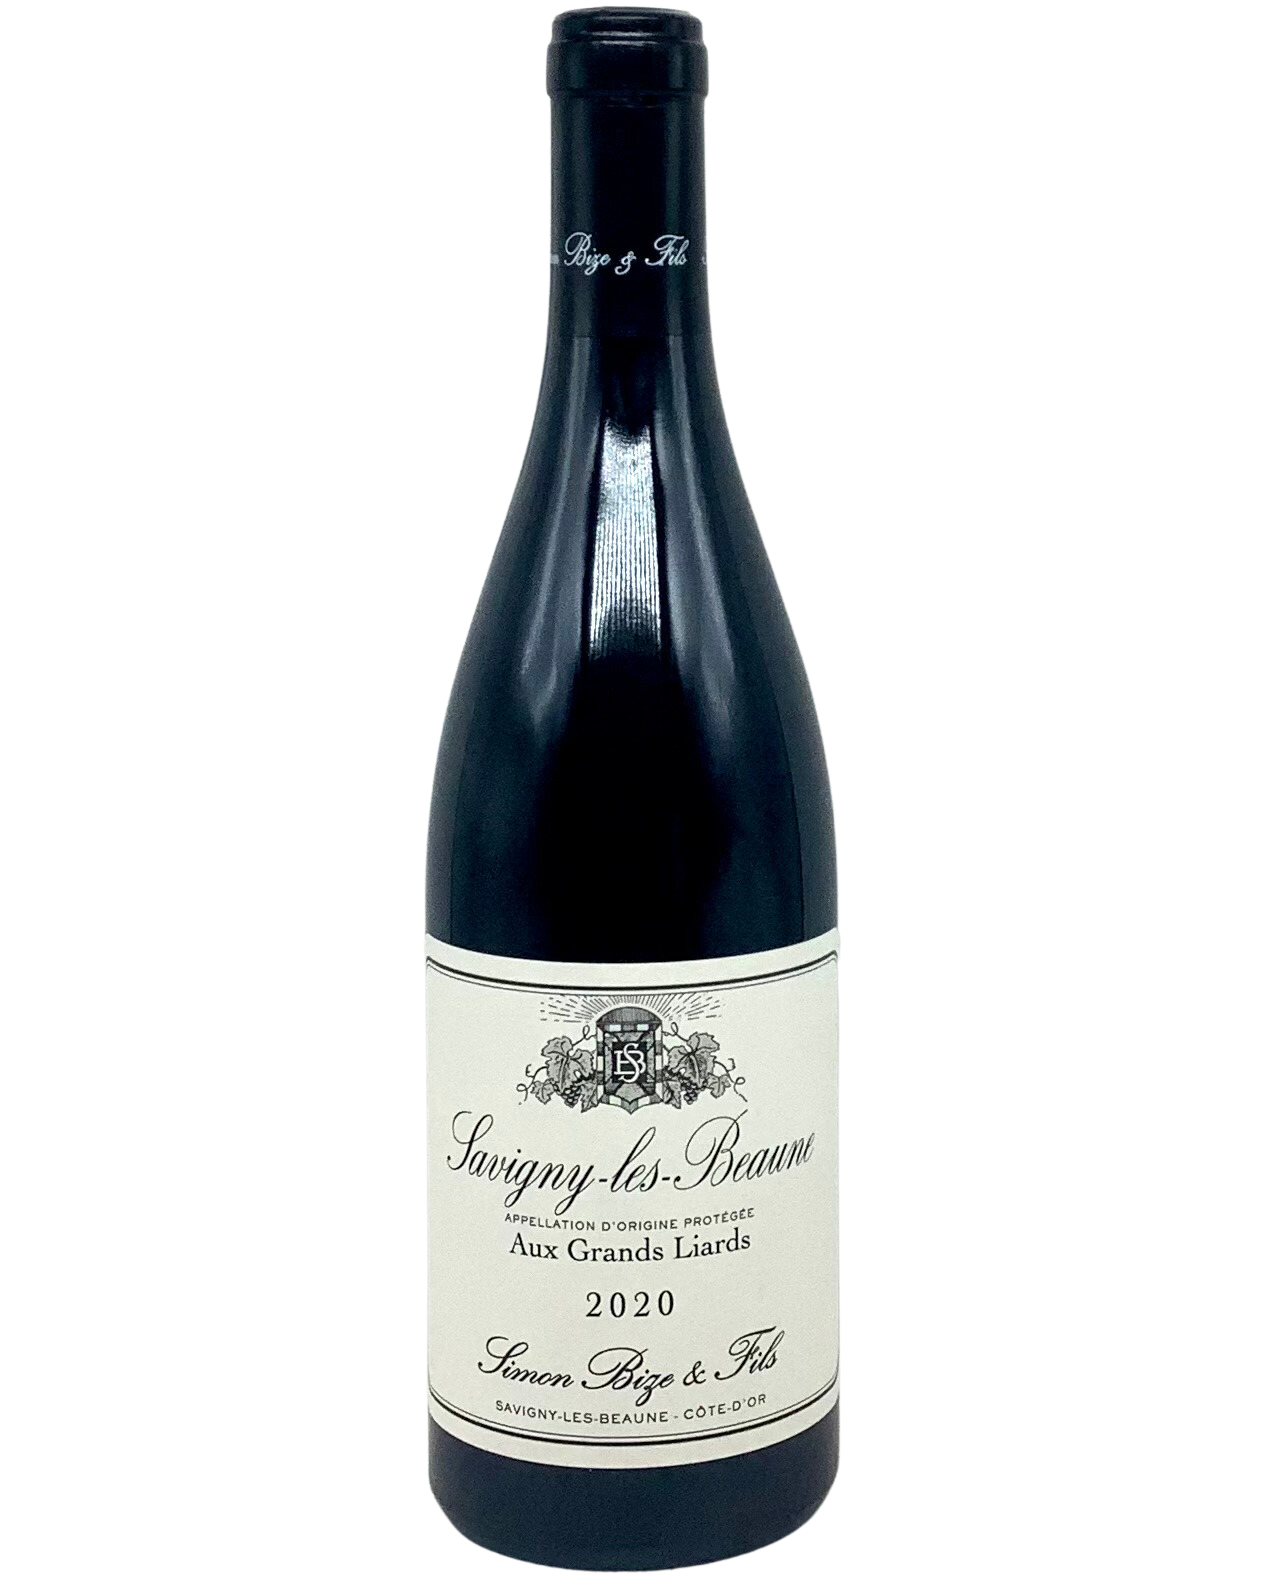 Simon Bize, Pinot Noir, Savigny-les-Beaune "Aux Grands Liards" Côte de Beaune, Burgundy, France 2020 newarrival